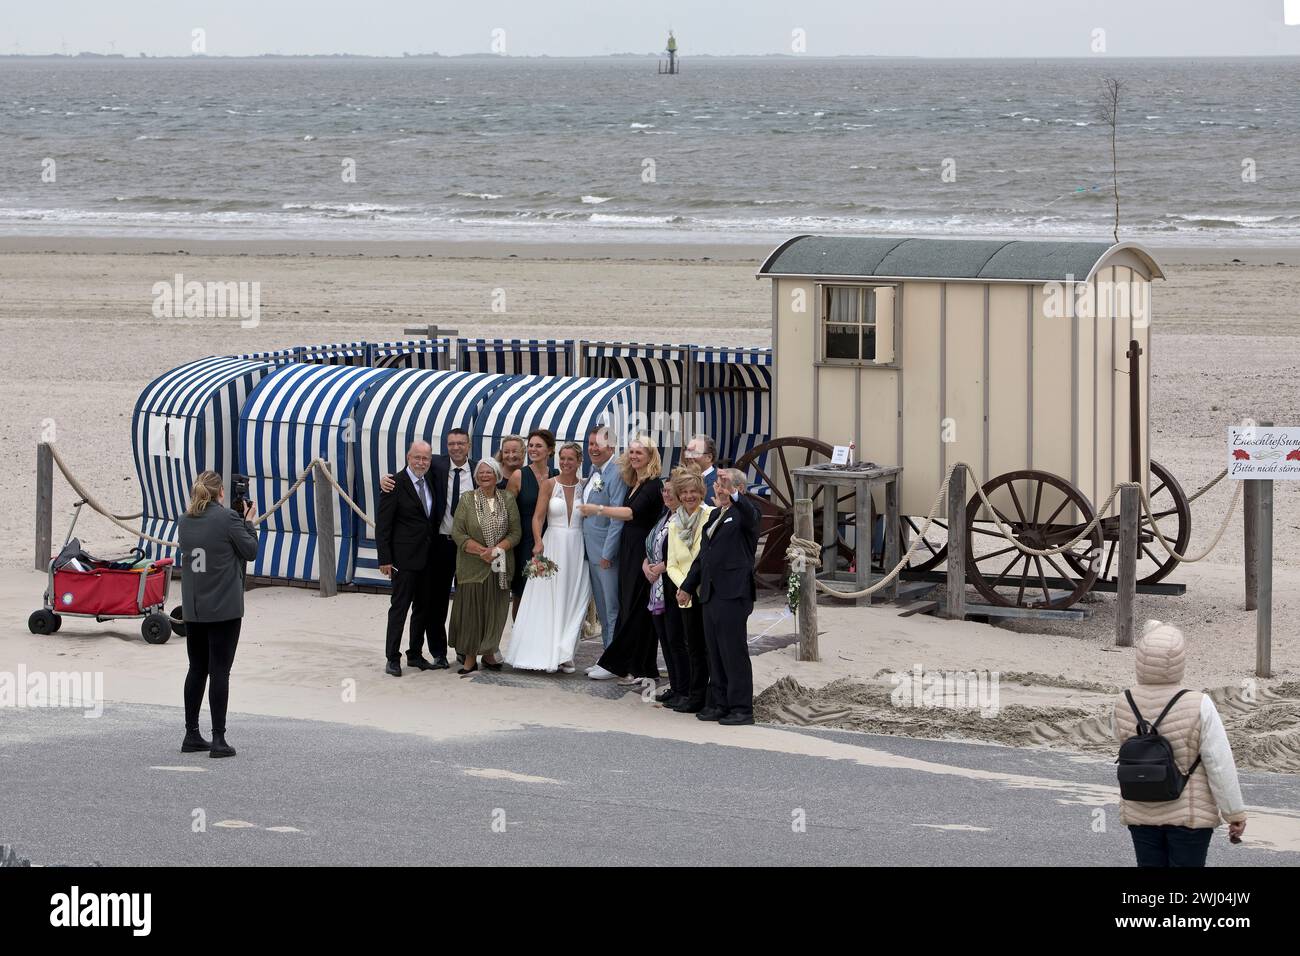 Photo de groupe lors d'un mariage civil au Badekarren, Weststrand, Norderney Island, Allemagne, Europe Banque D'Images